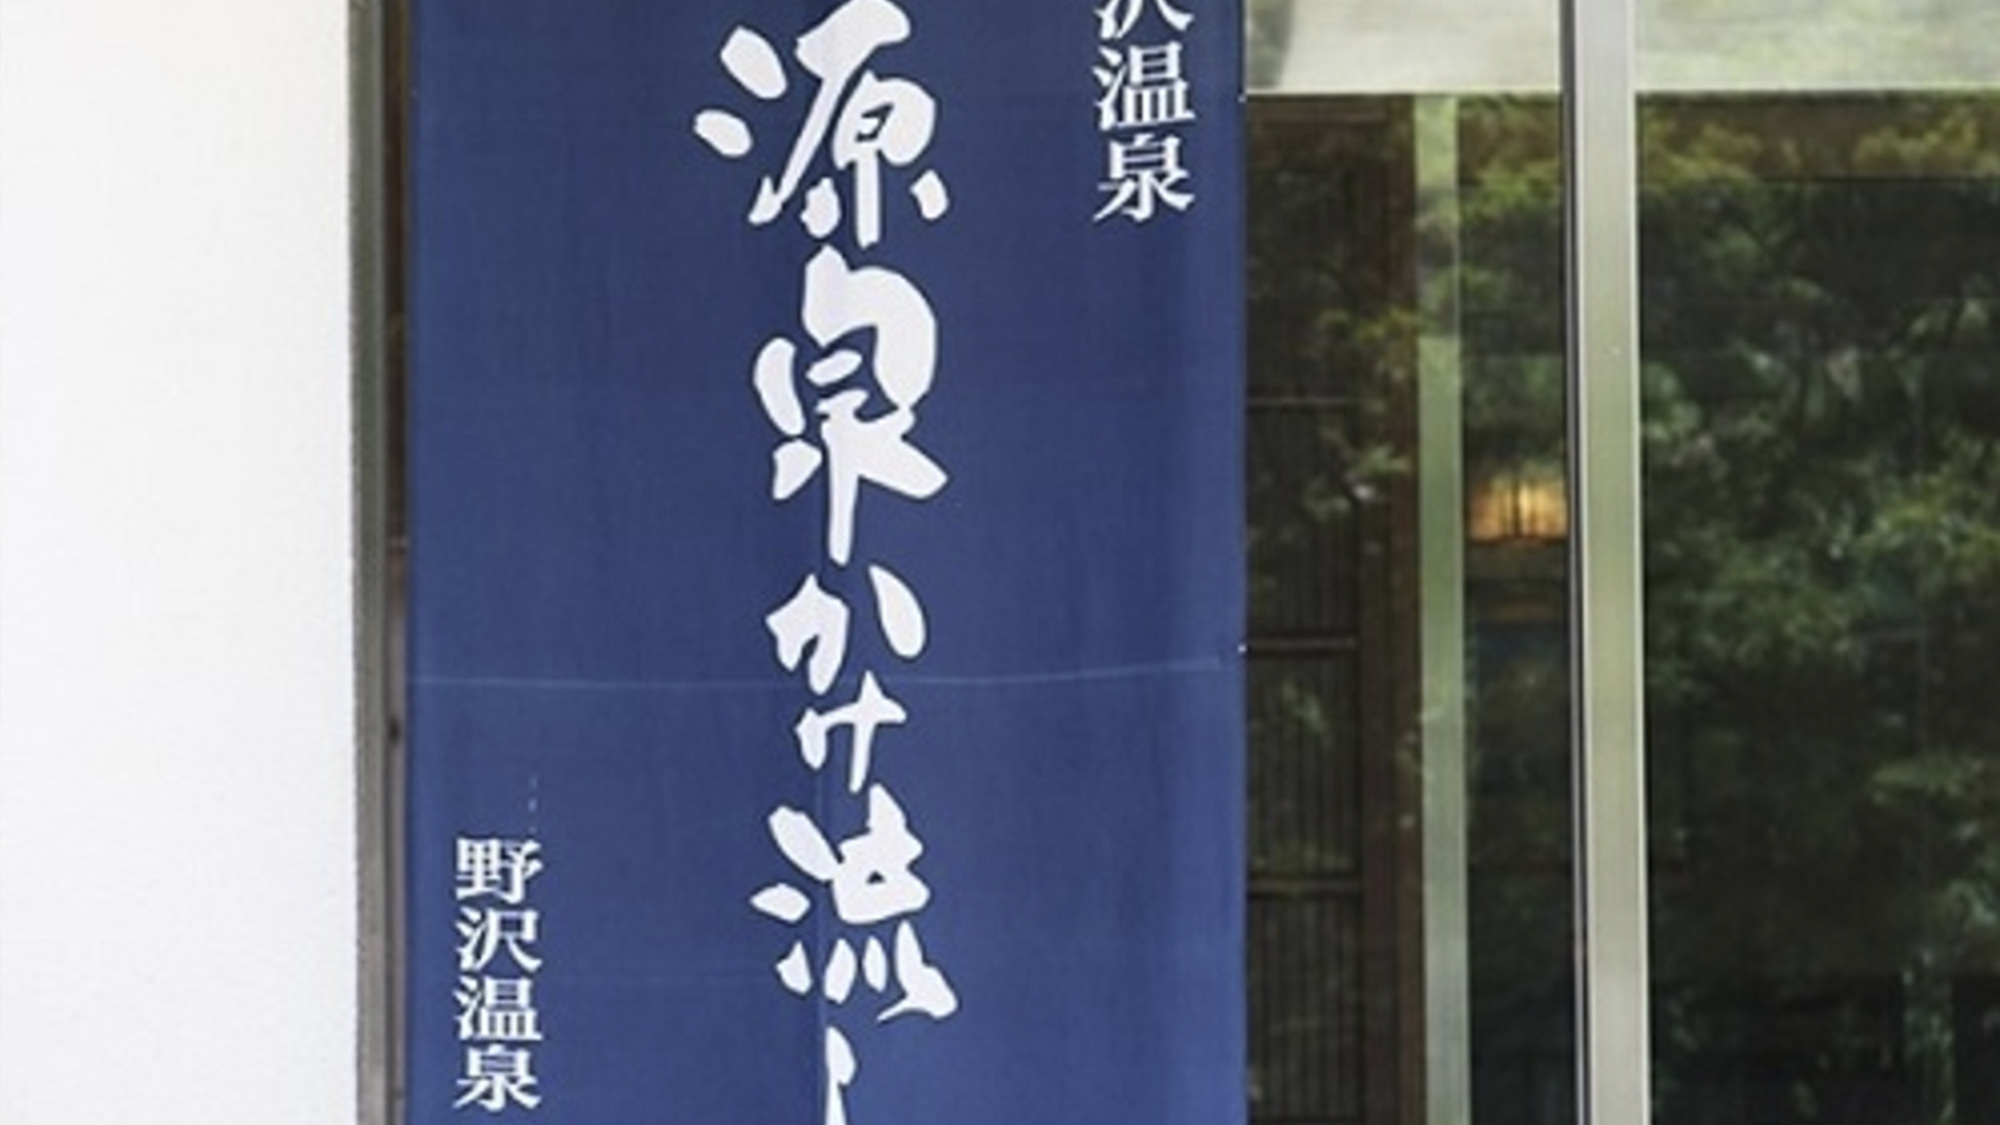 当館は、「野沢温泉源泉かけ流しの会」に加盟しております。